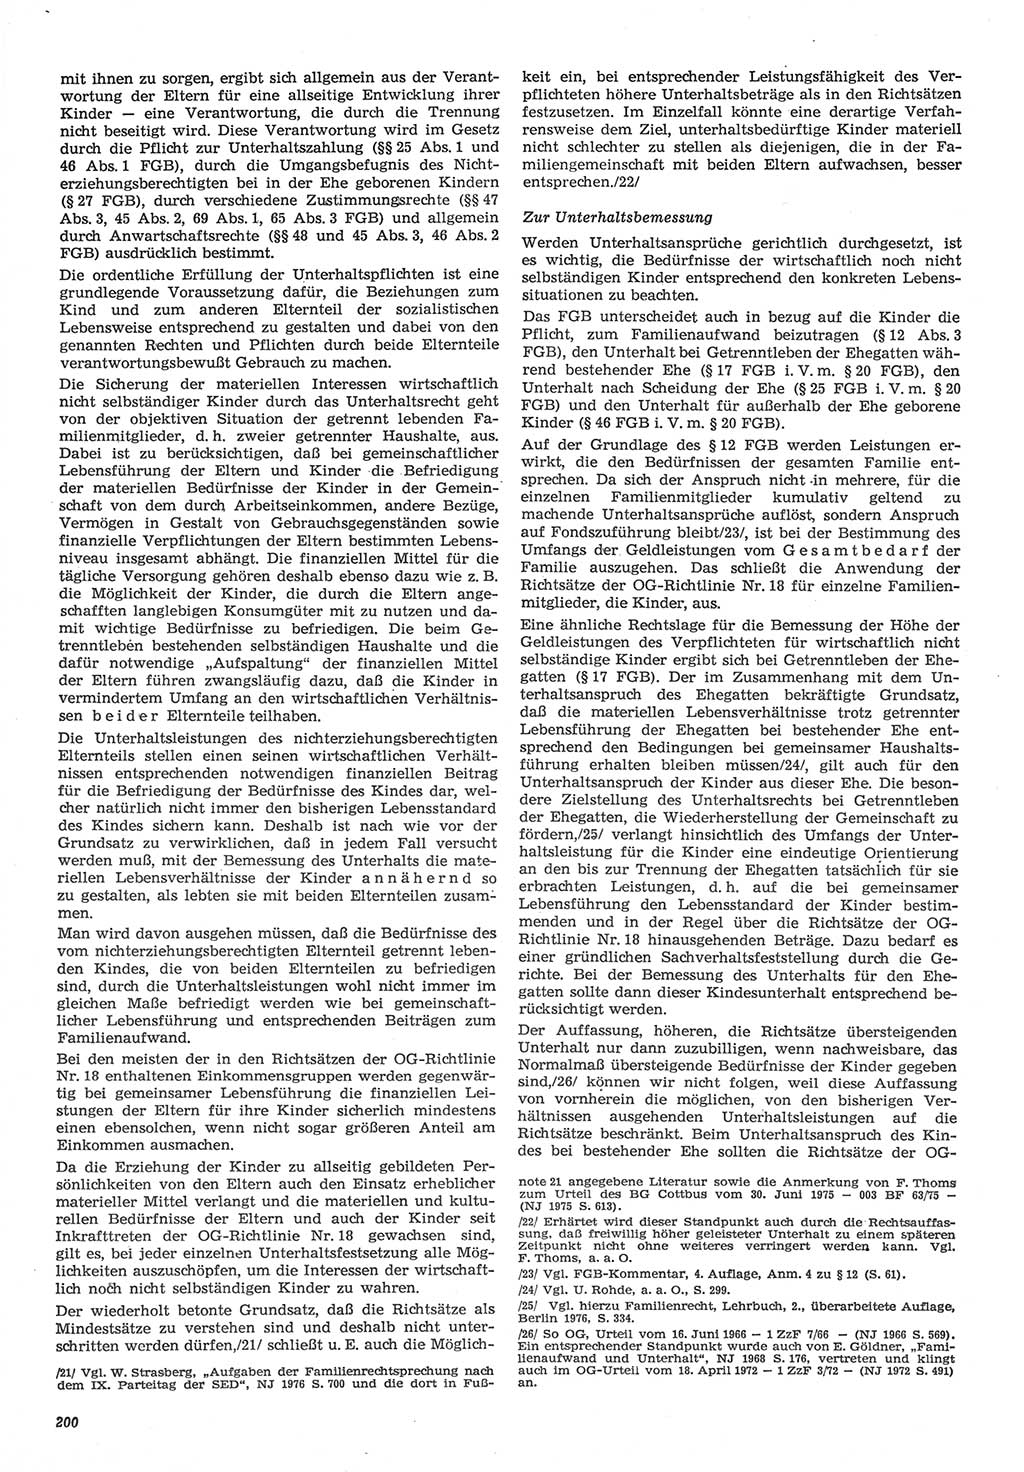 Neue Justiz (NJ), Zeitschrift für Recht und Rechtswissenschaft-Zeitschrift, sozialistisches Recht und Gesetzlichkeit, 31. Jahrgang 1977, Seite 200 (NJ DDR 1977, S. 200)